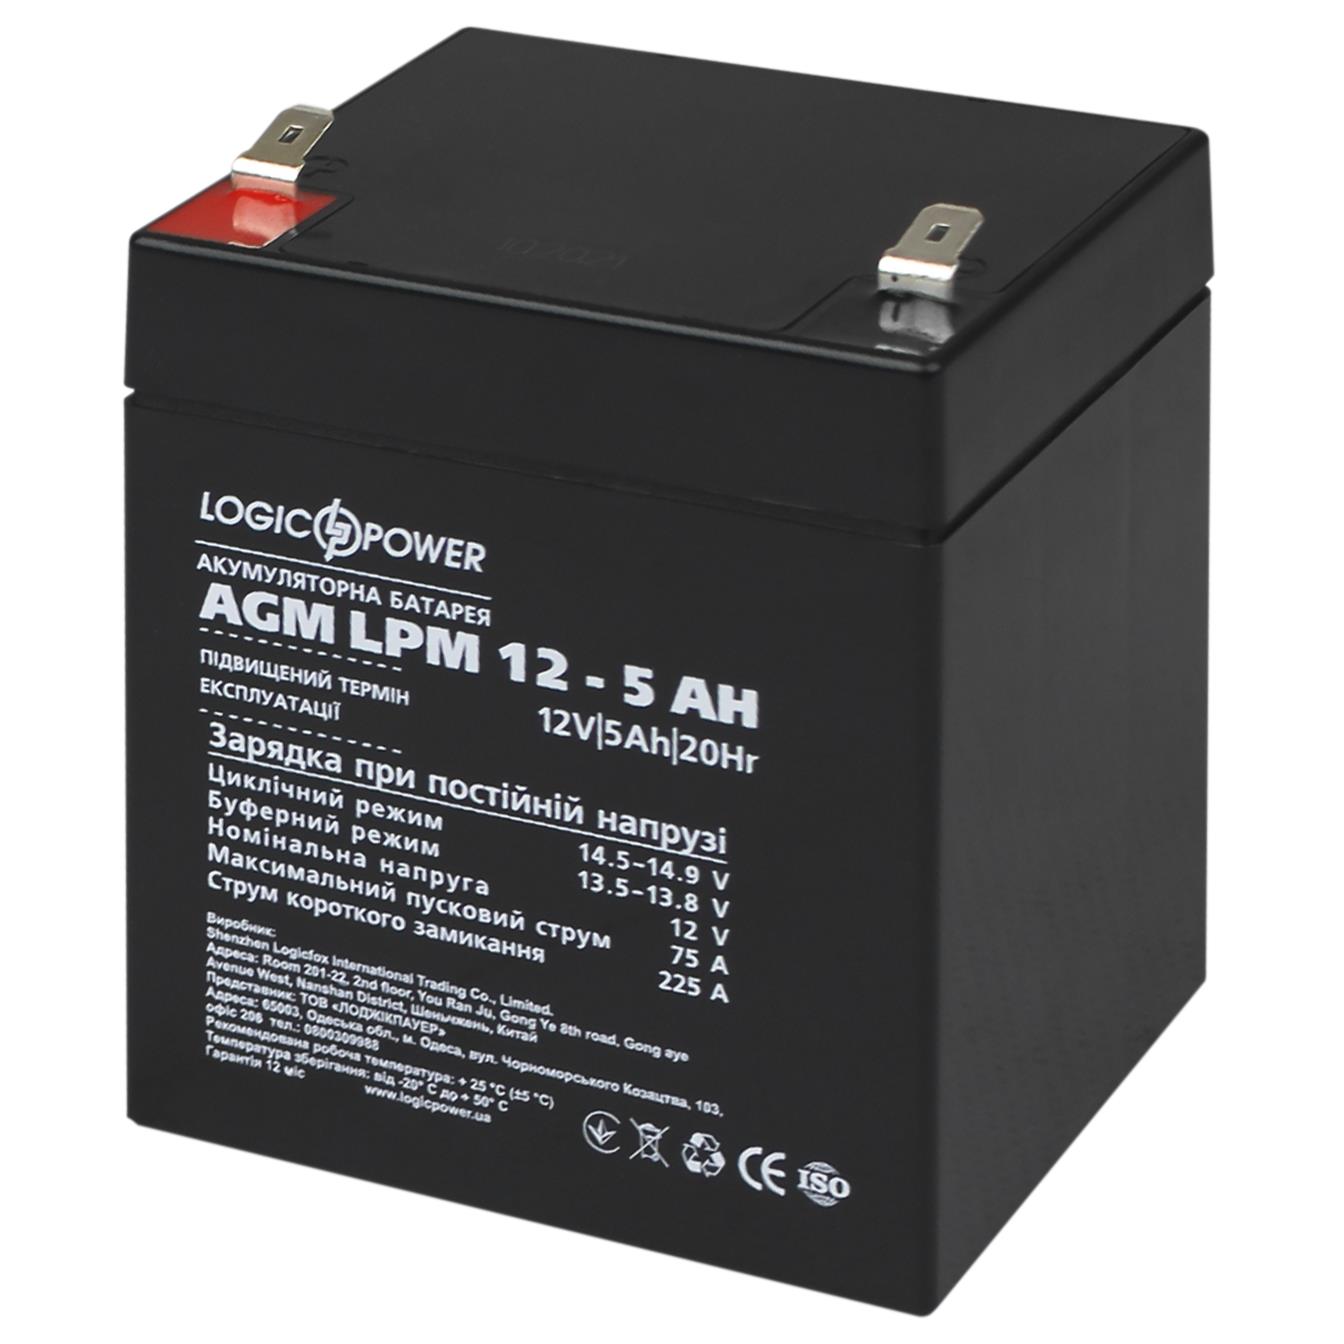 Цена аккумулятор 5 a·h LogicPower AGM LPM 12V - 5 Ah (3861) в Киеве